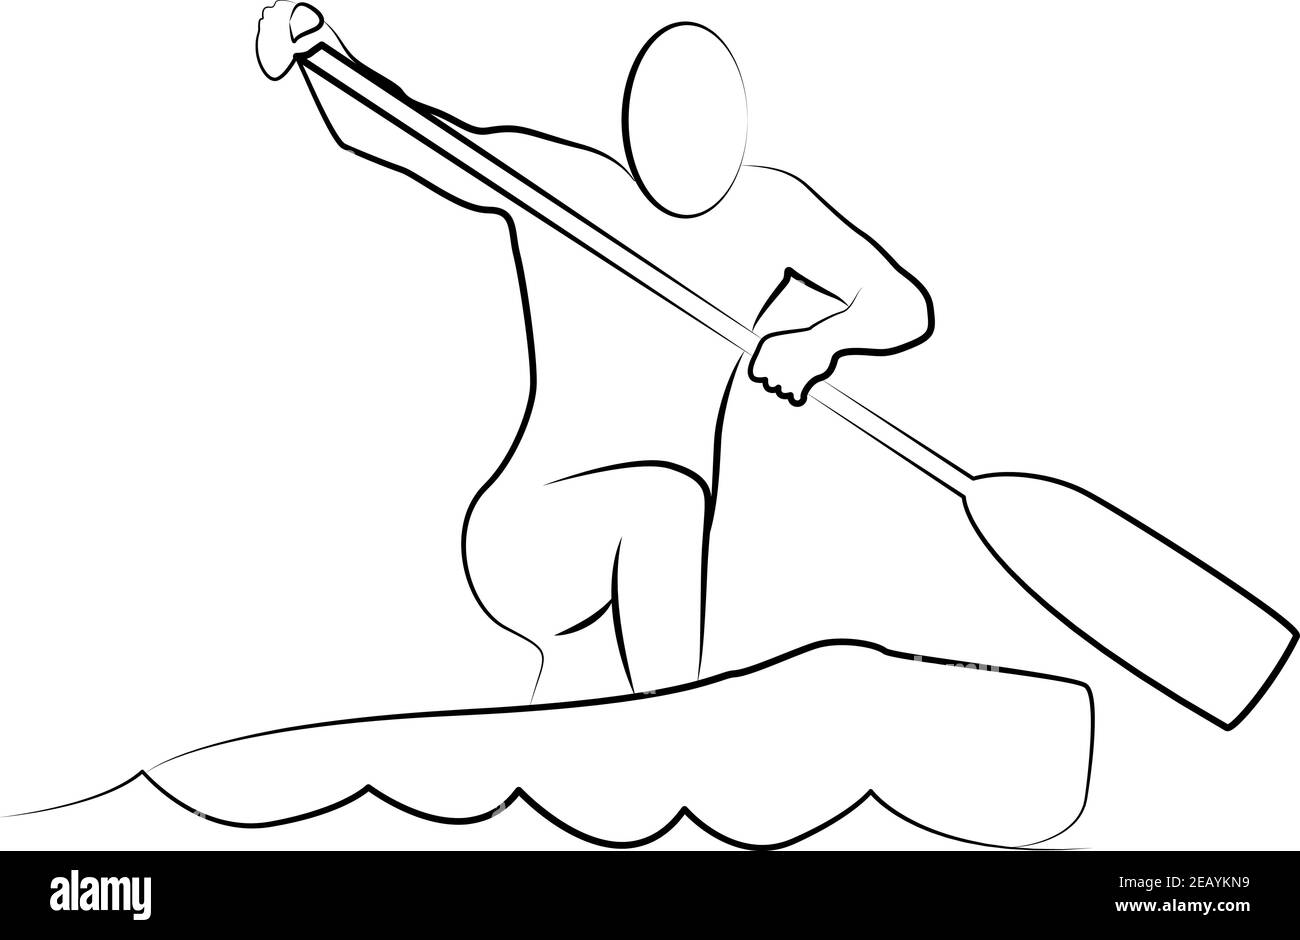 Kanu-Logo oder Kajak Sport Emblem - Mann Silhouette, die Rudern mit Rudern von Kanu und Fluss oder See Wellen Stock Vektor